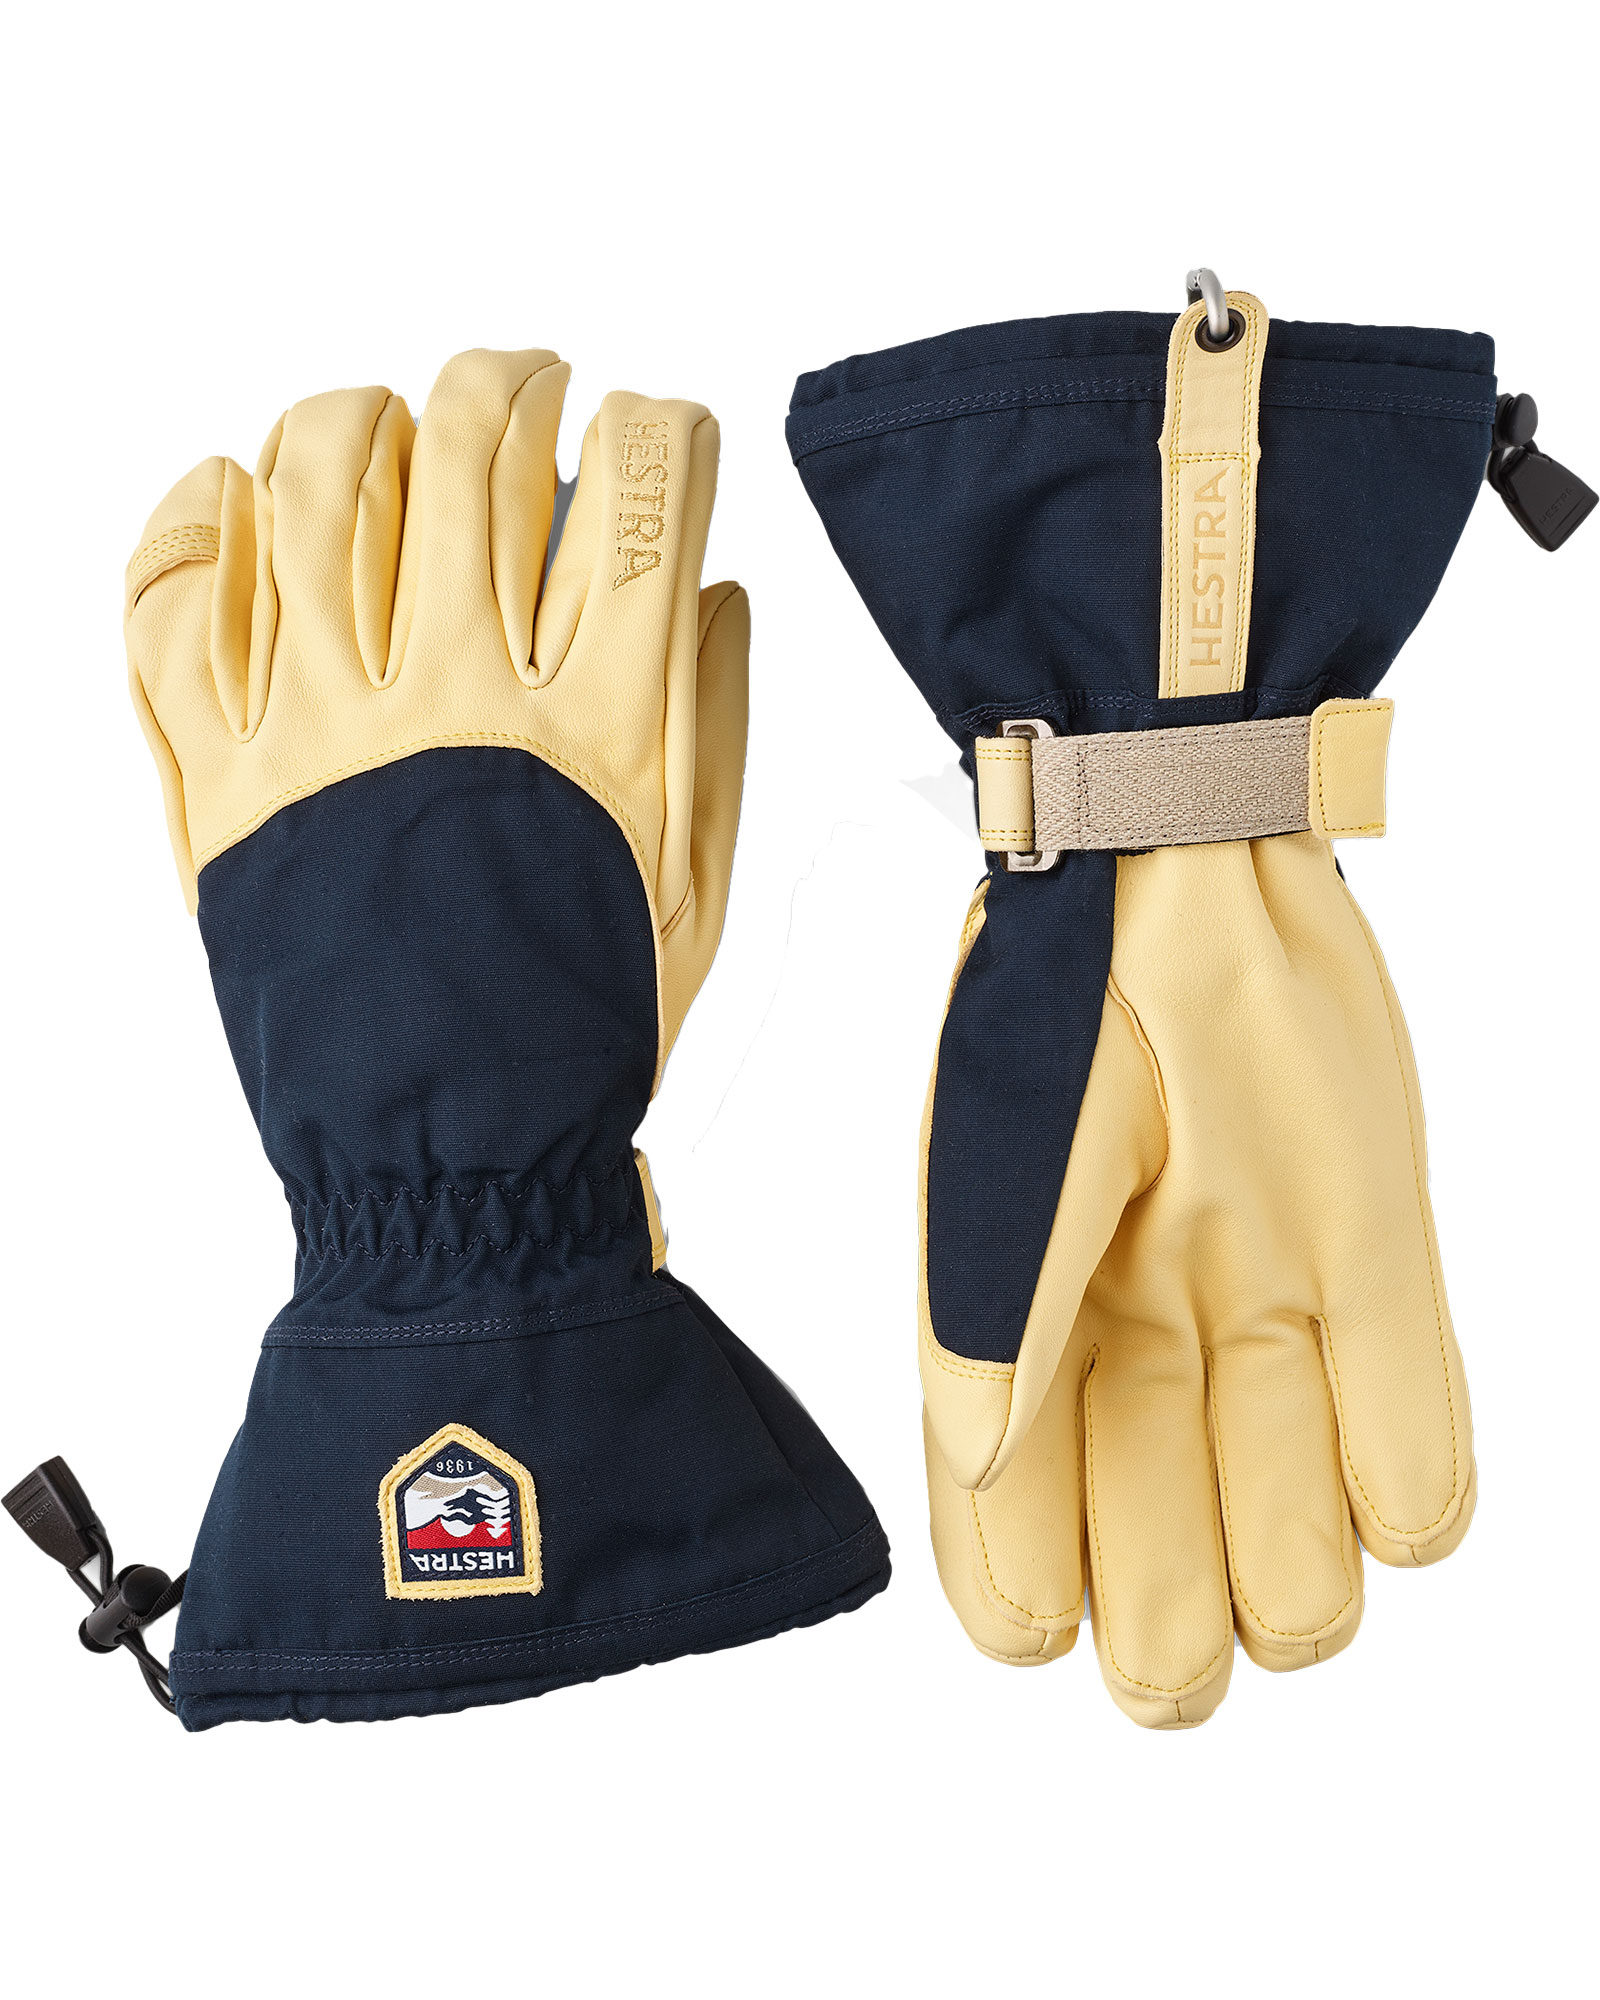 Hestra Narvik Ecocuir Men’s Gloves - Navy/Natural Size 11